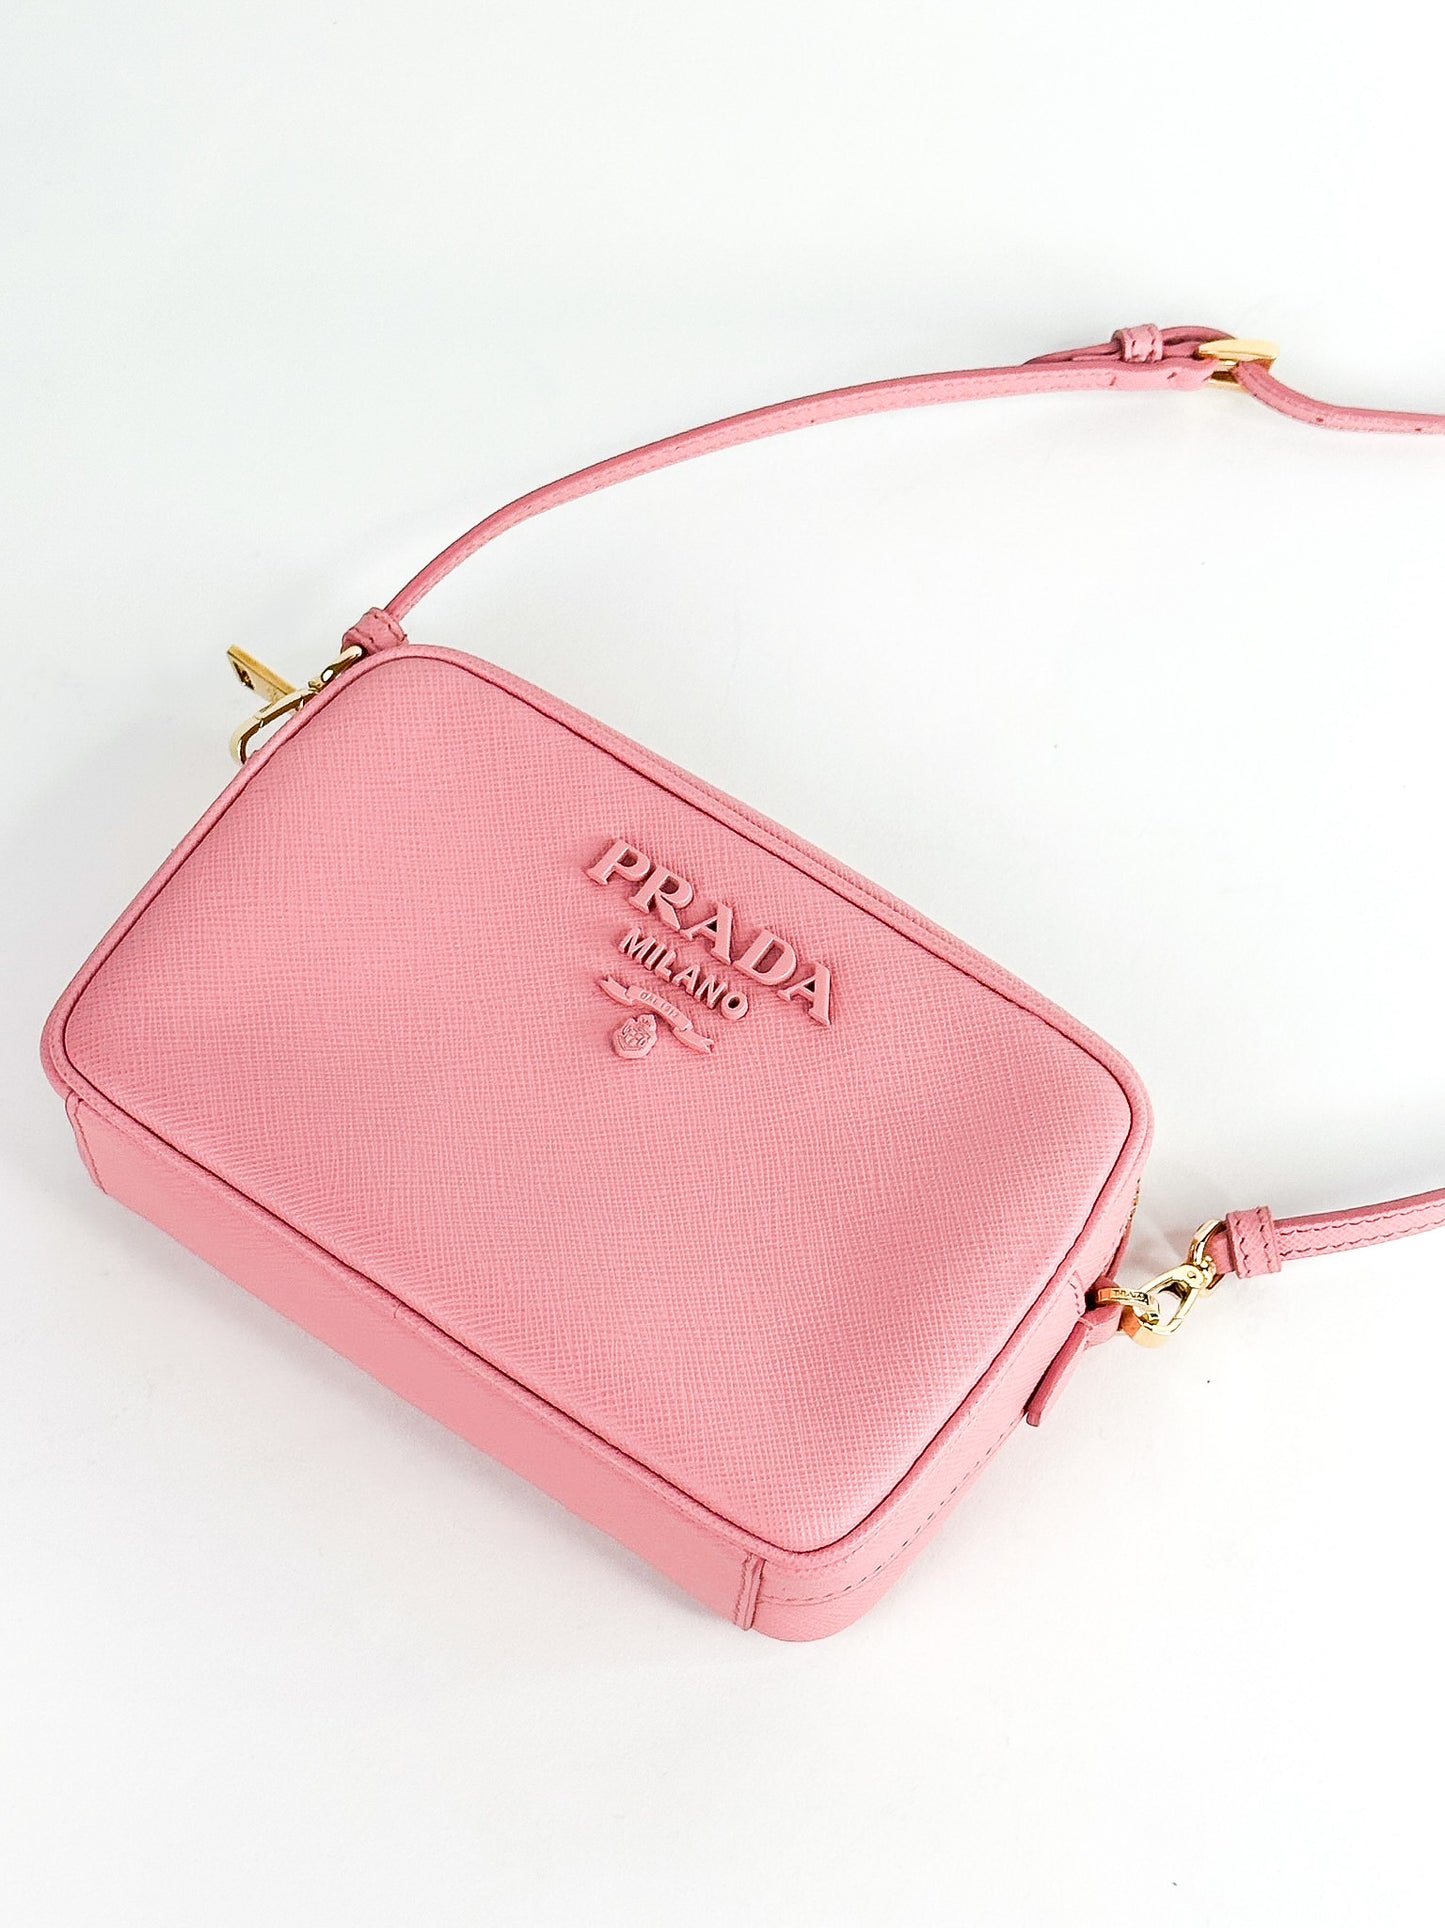 Prada Camera Bag Saffiano Leather